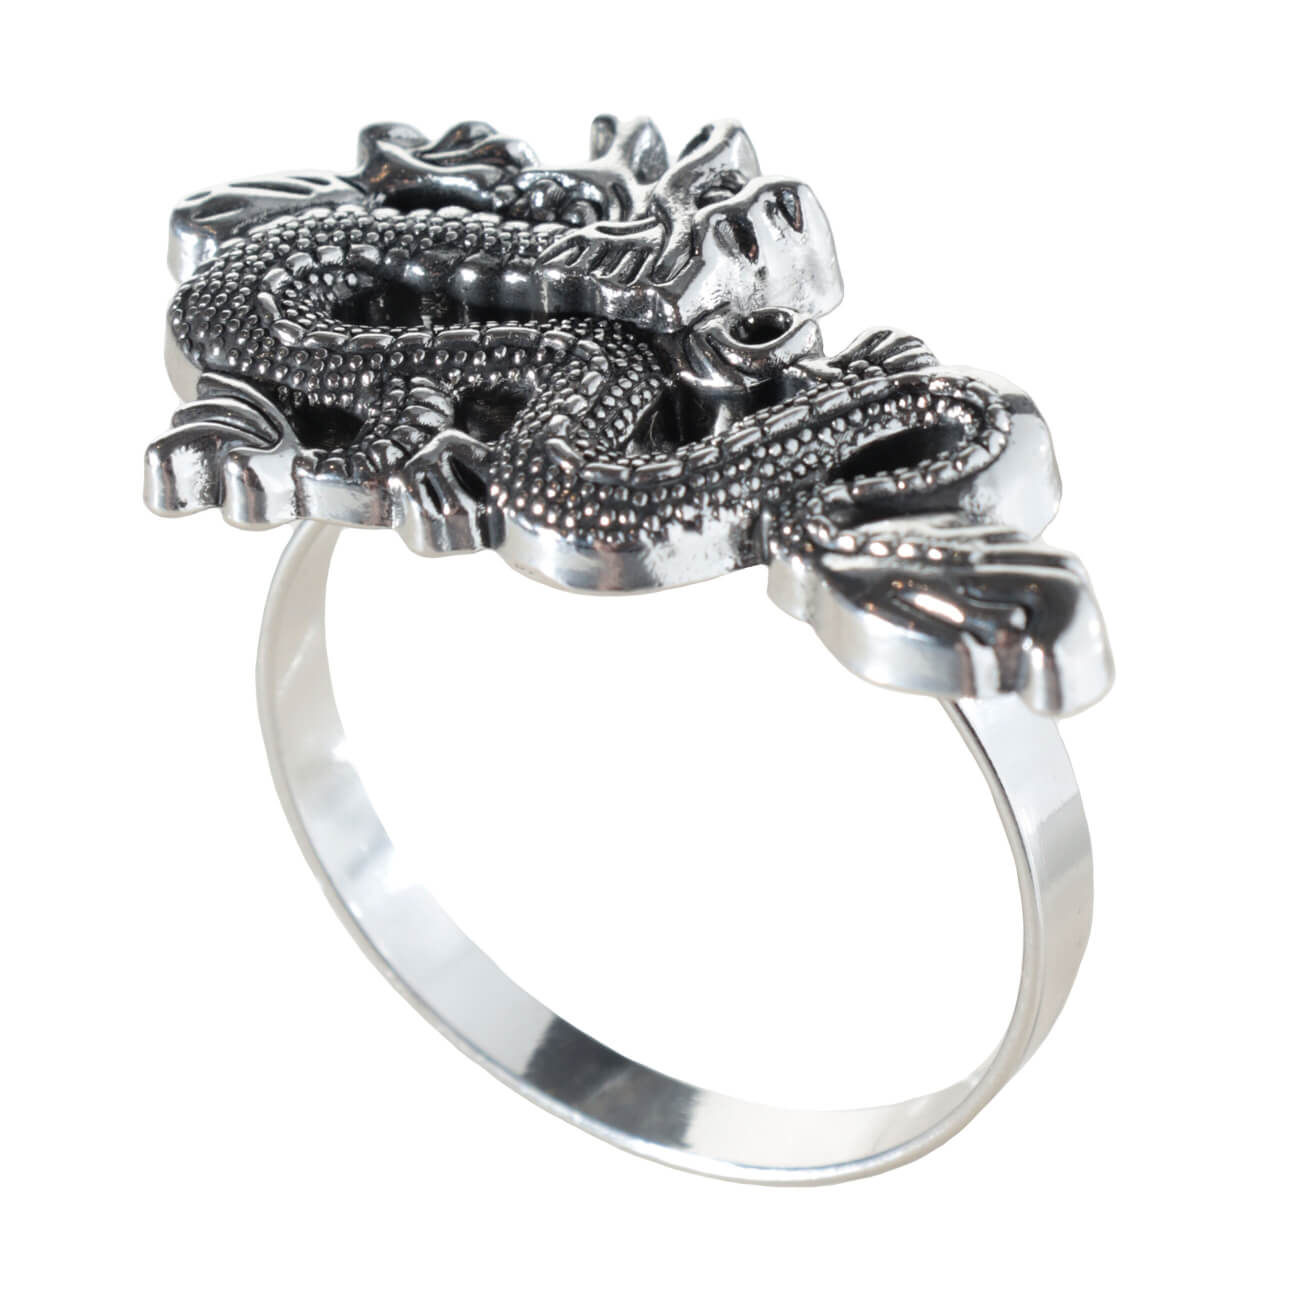 Кольцо для салфеток, 5 см, металл, серебристое, Дракон, Dragon dayron изображение № 1